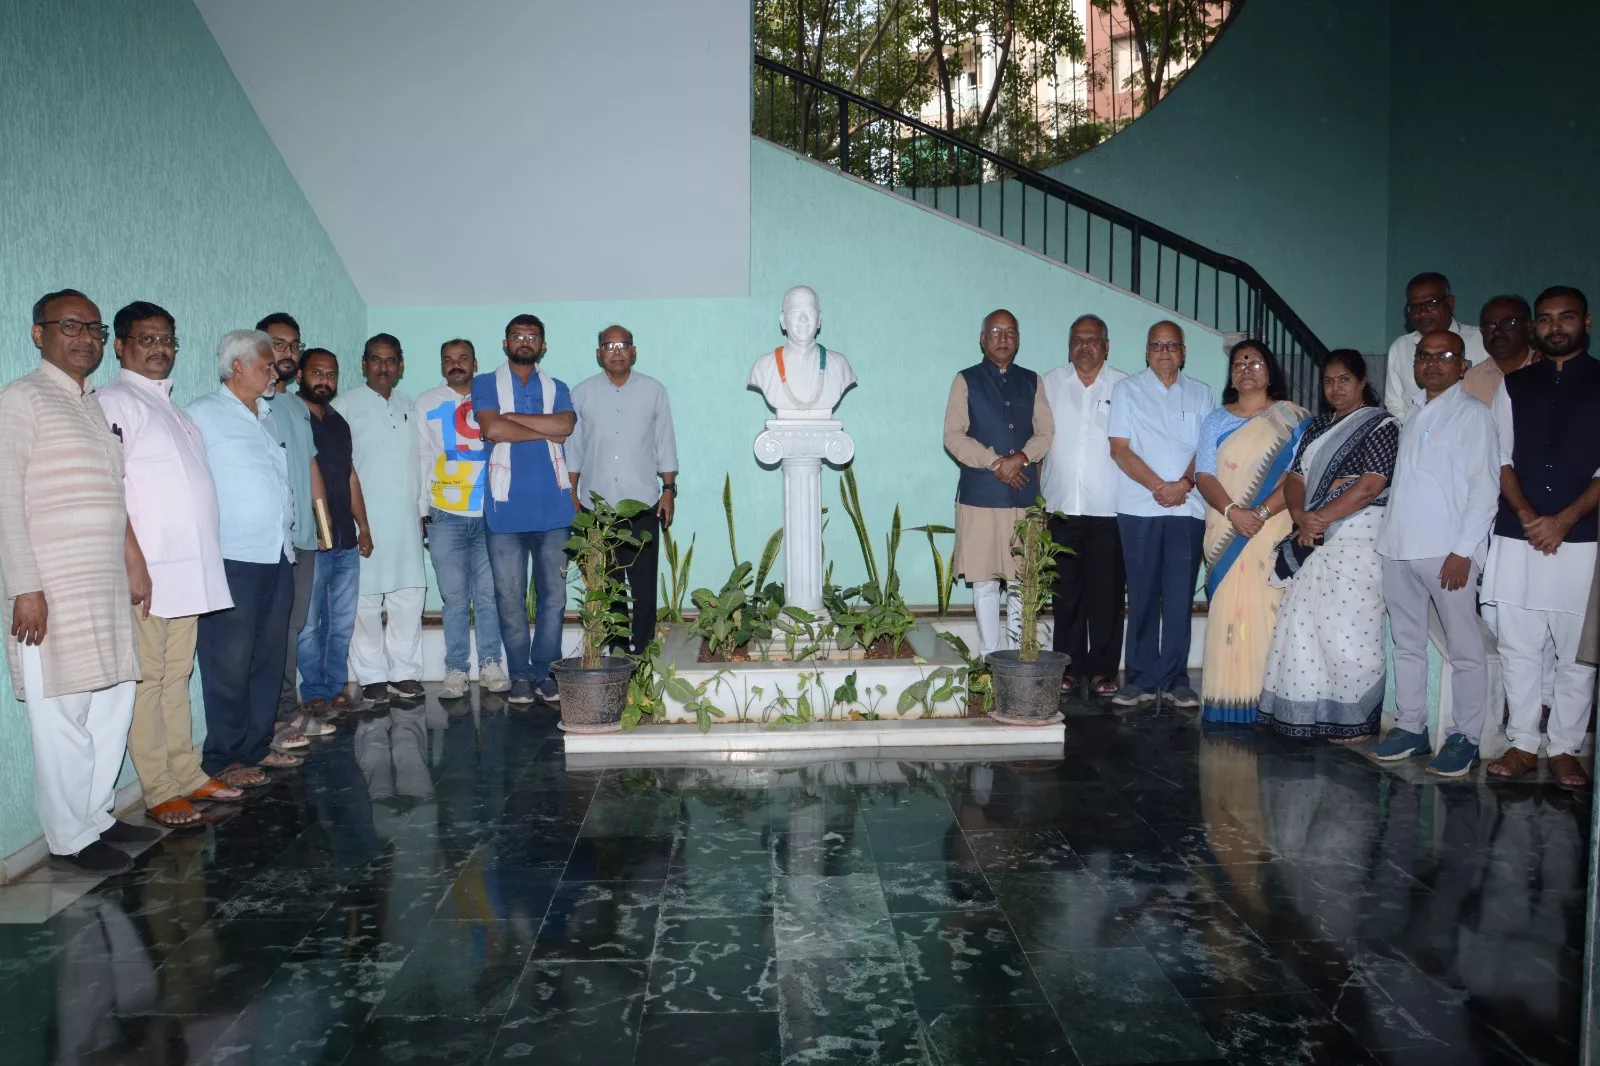 धार्मिक सद्भाव बनाए रखने के लिए गांधी जी के विचारों की जरूरत: राह नबाकुमार | New India Times